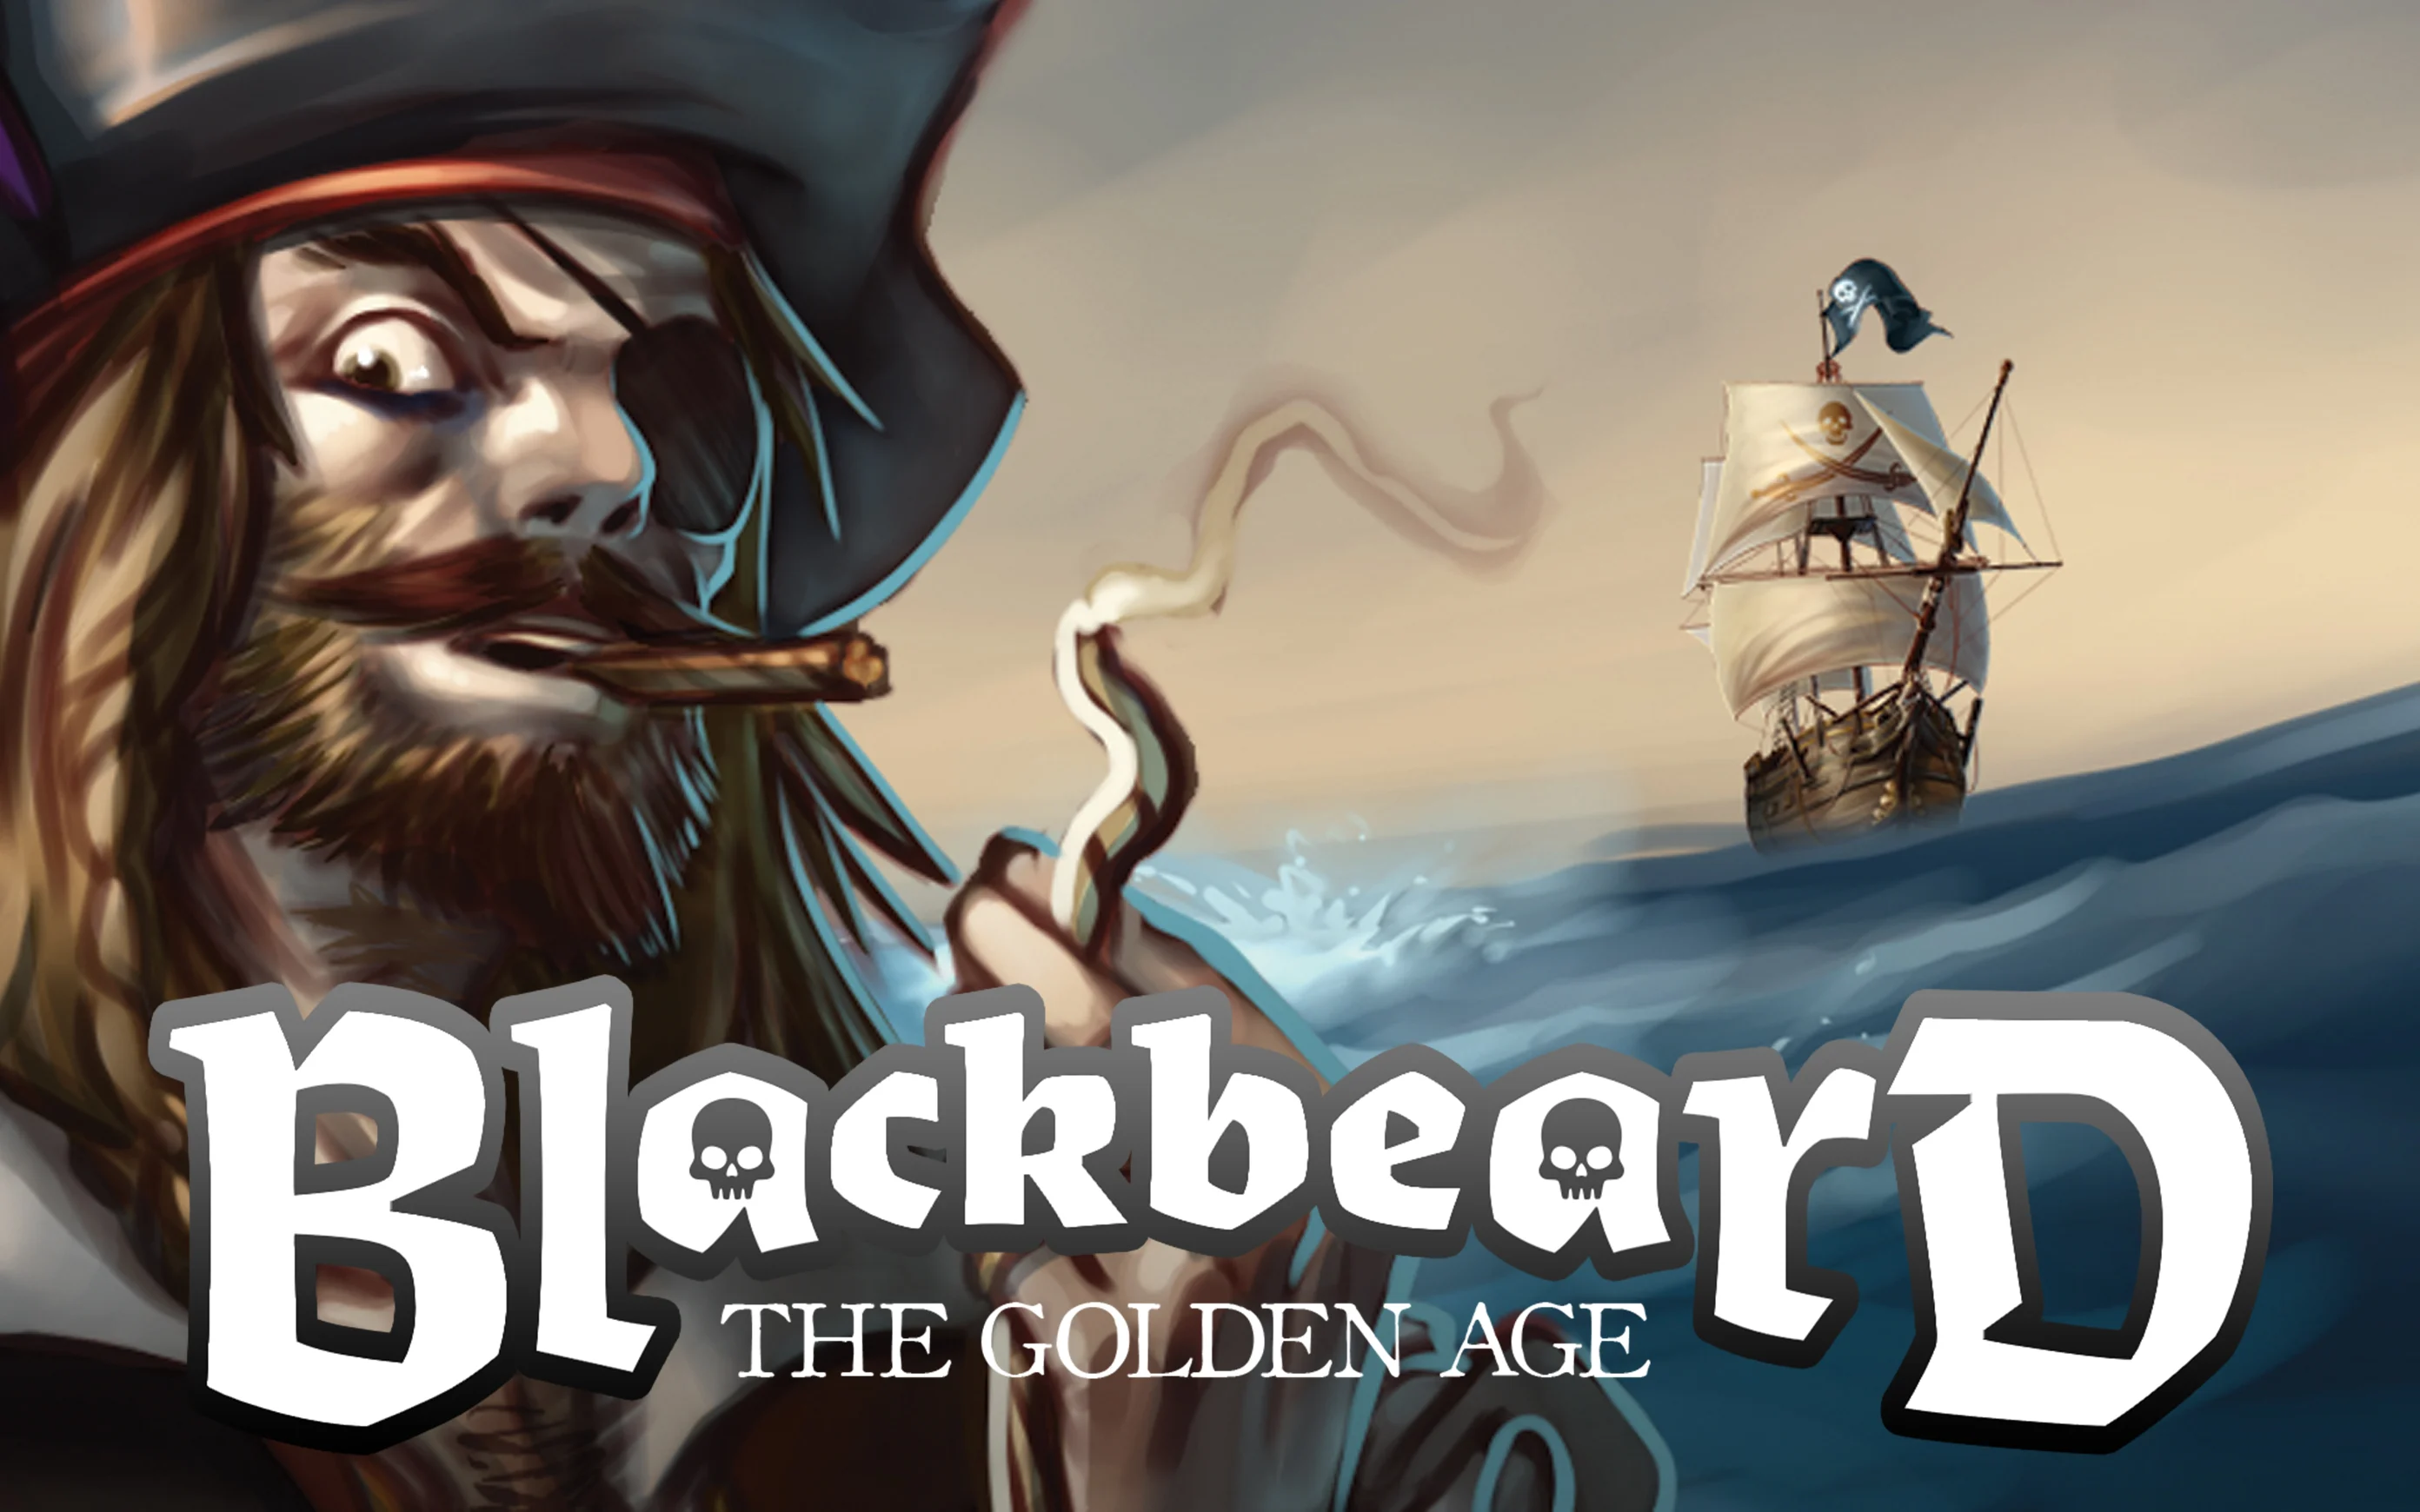 Luaj Blackbeard - The Golden Age në kazino Starcasino.be në internet